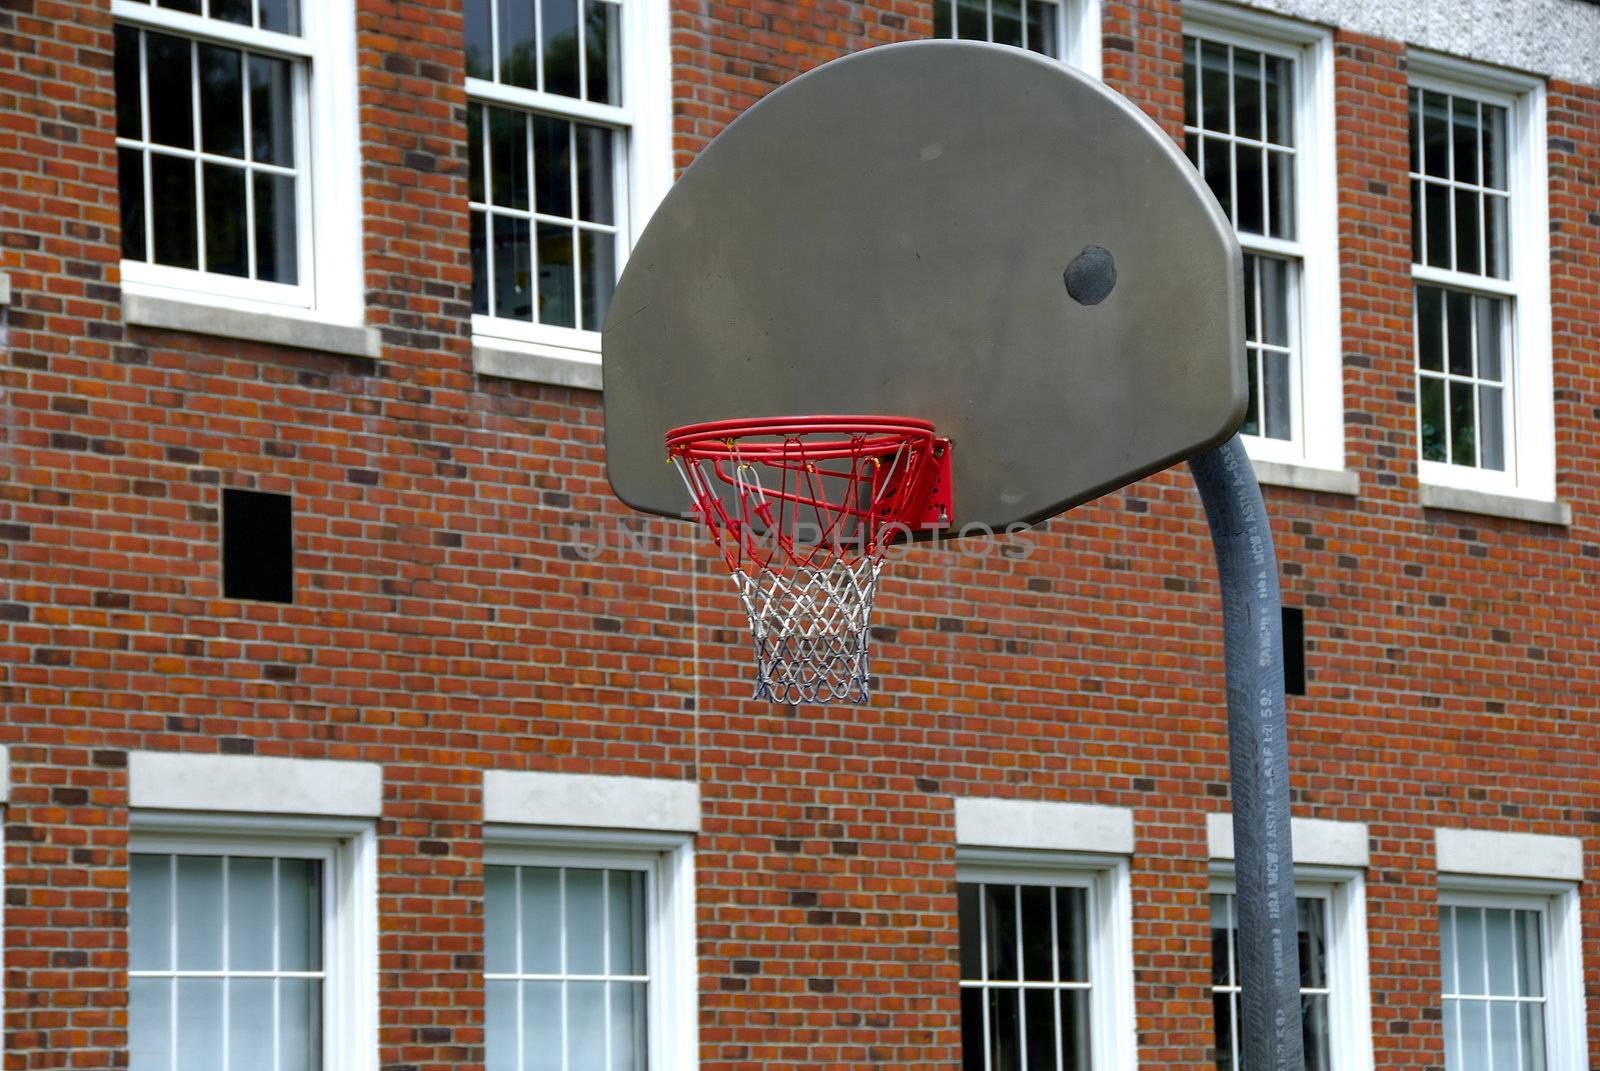 An open basket ball court in an old school